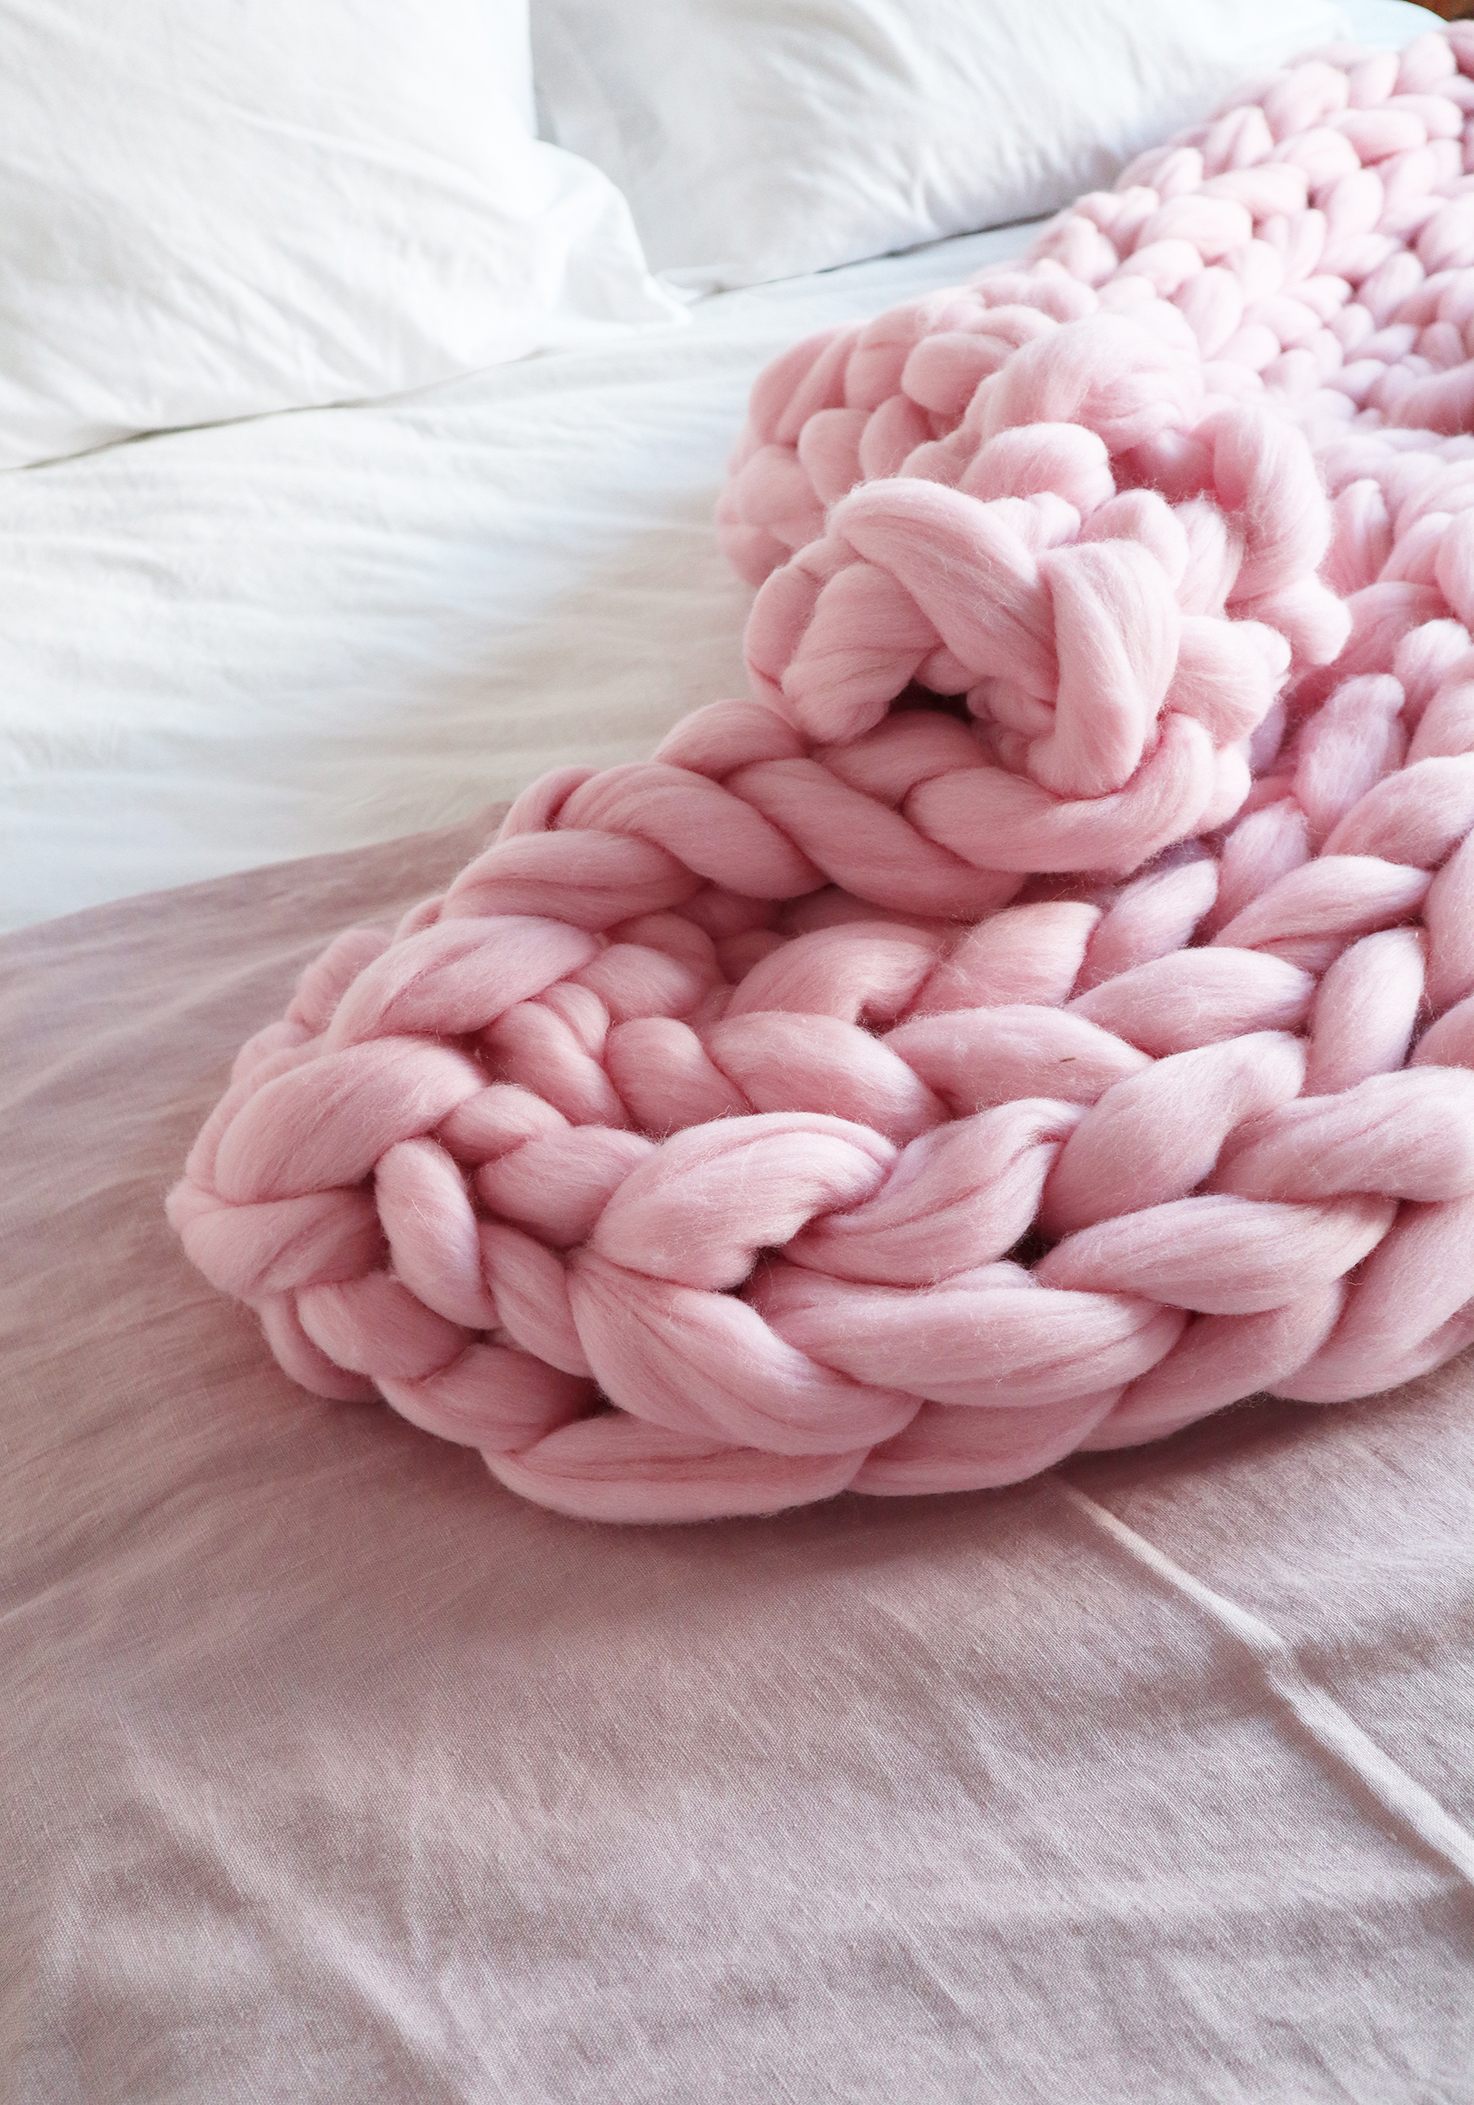 Mantas de lana o algodón